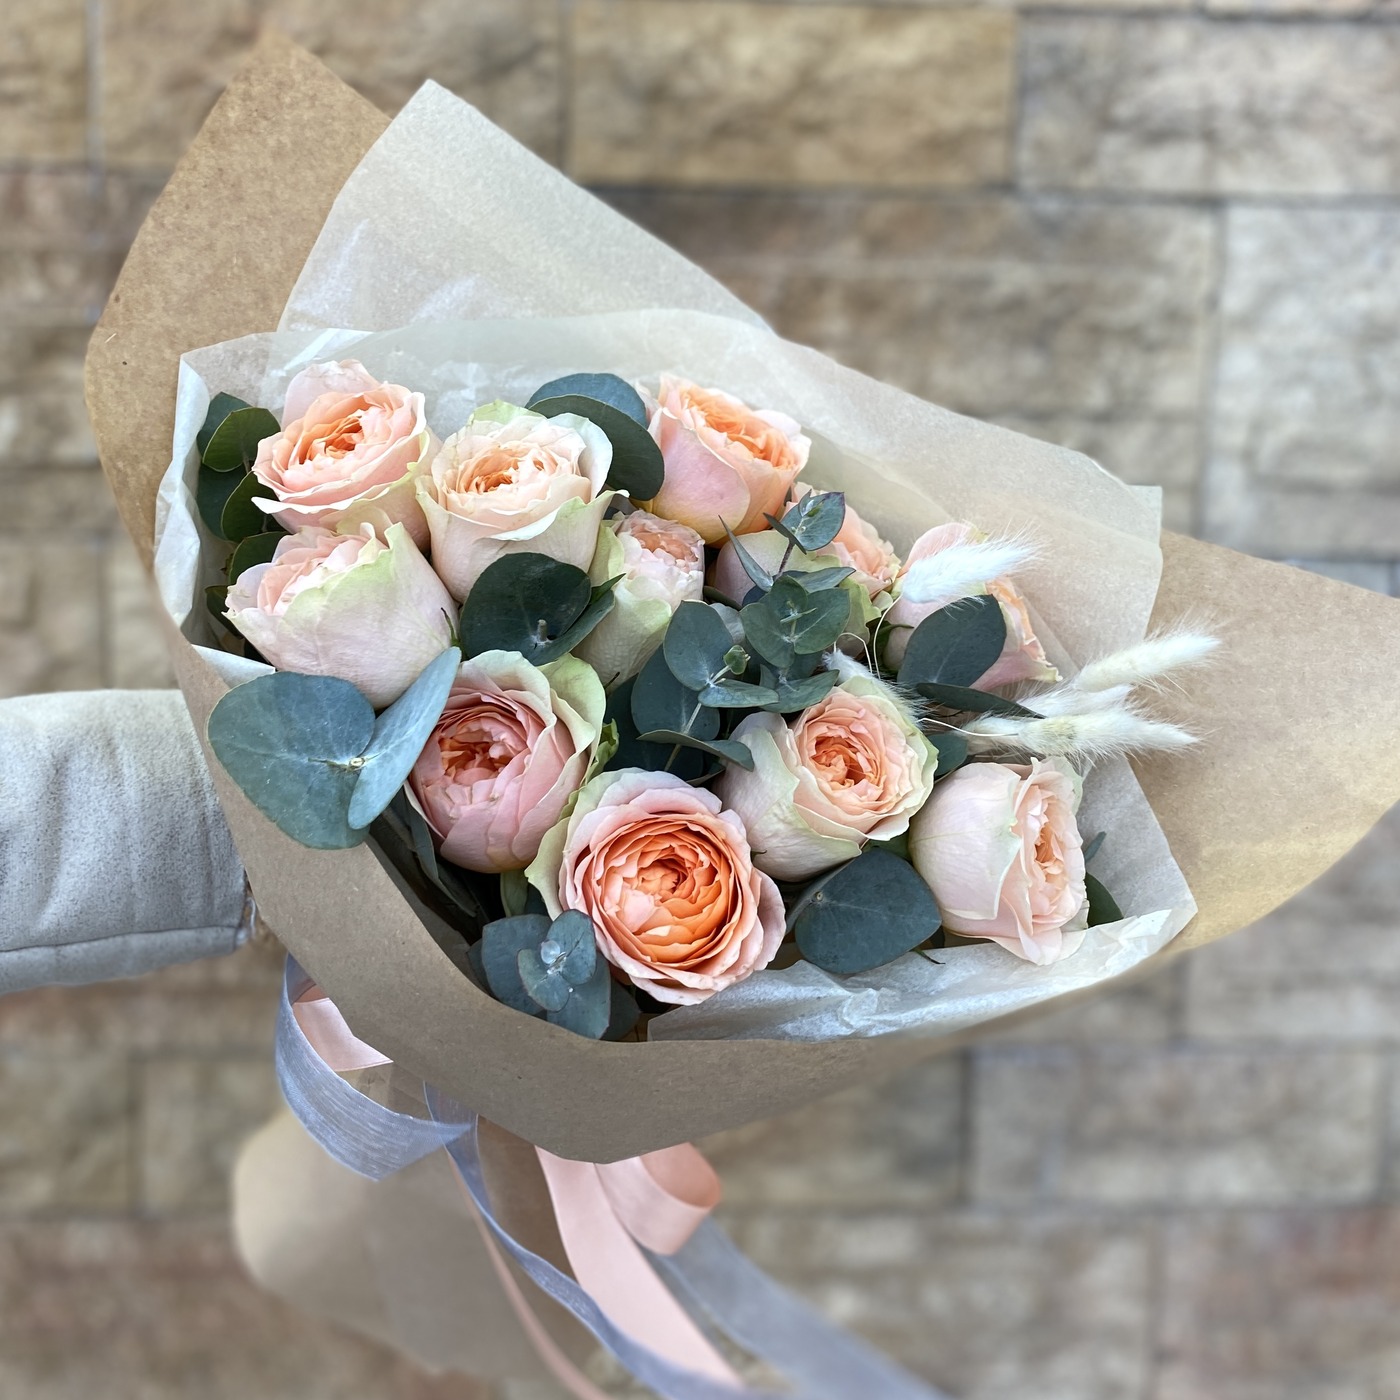 Абрикосовые розы с эвкалиптом до 5 тыс рублей на День Святого Валентина